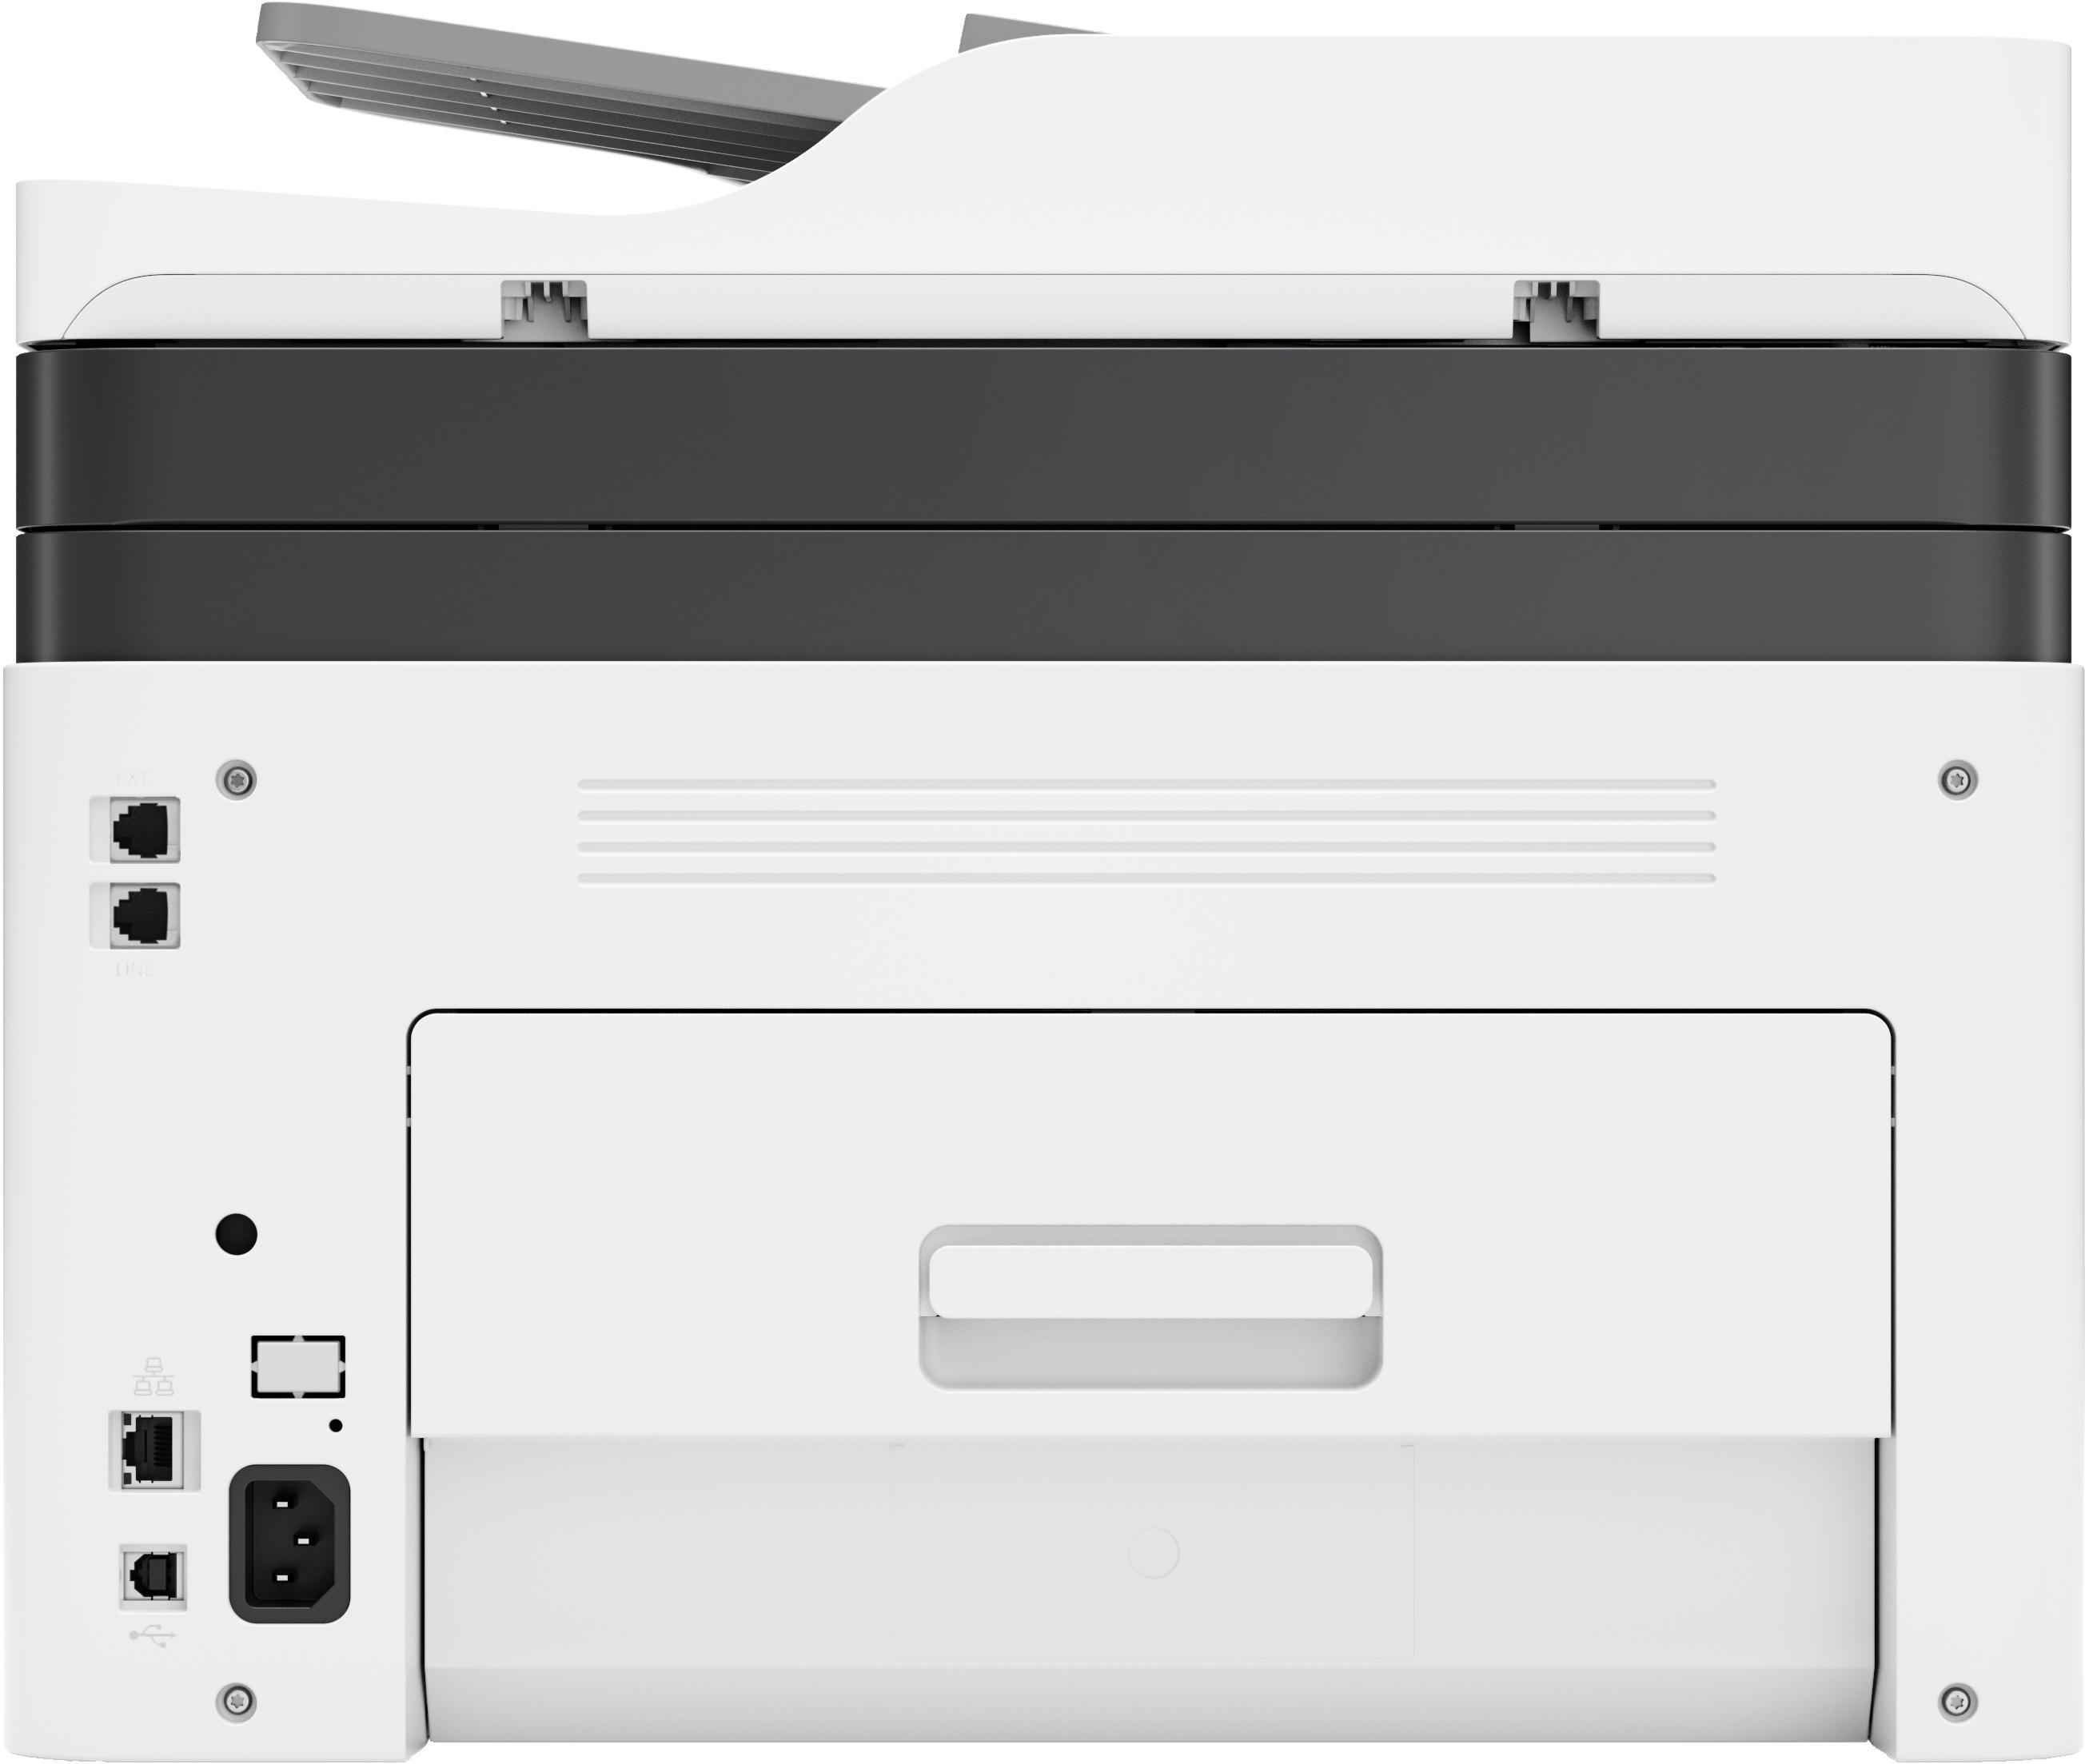 HP - Impresora Inyección de Tinta HP Laserjet Color MFP 179fnw